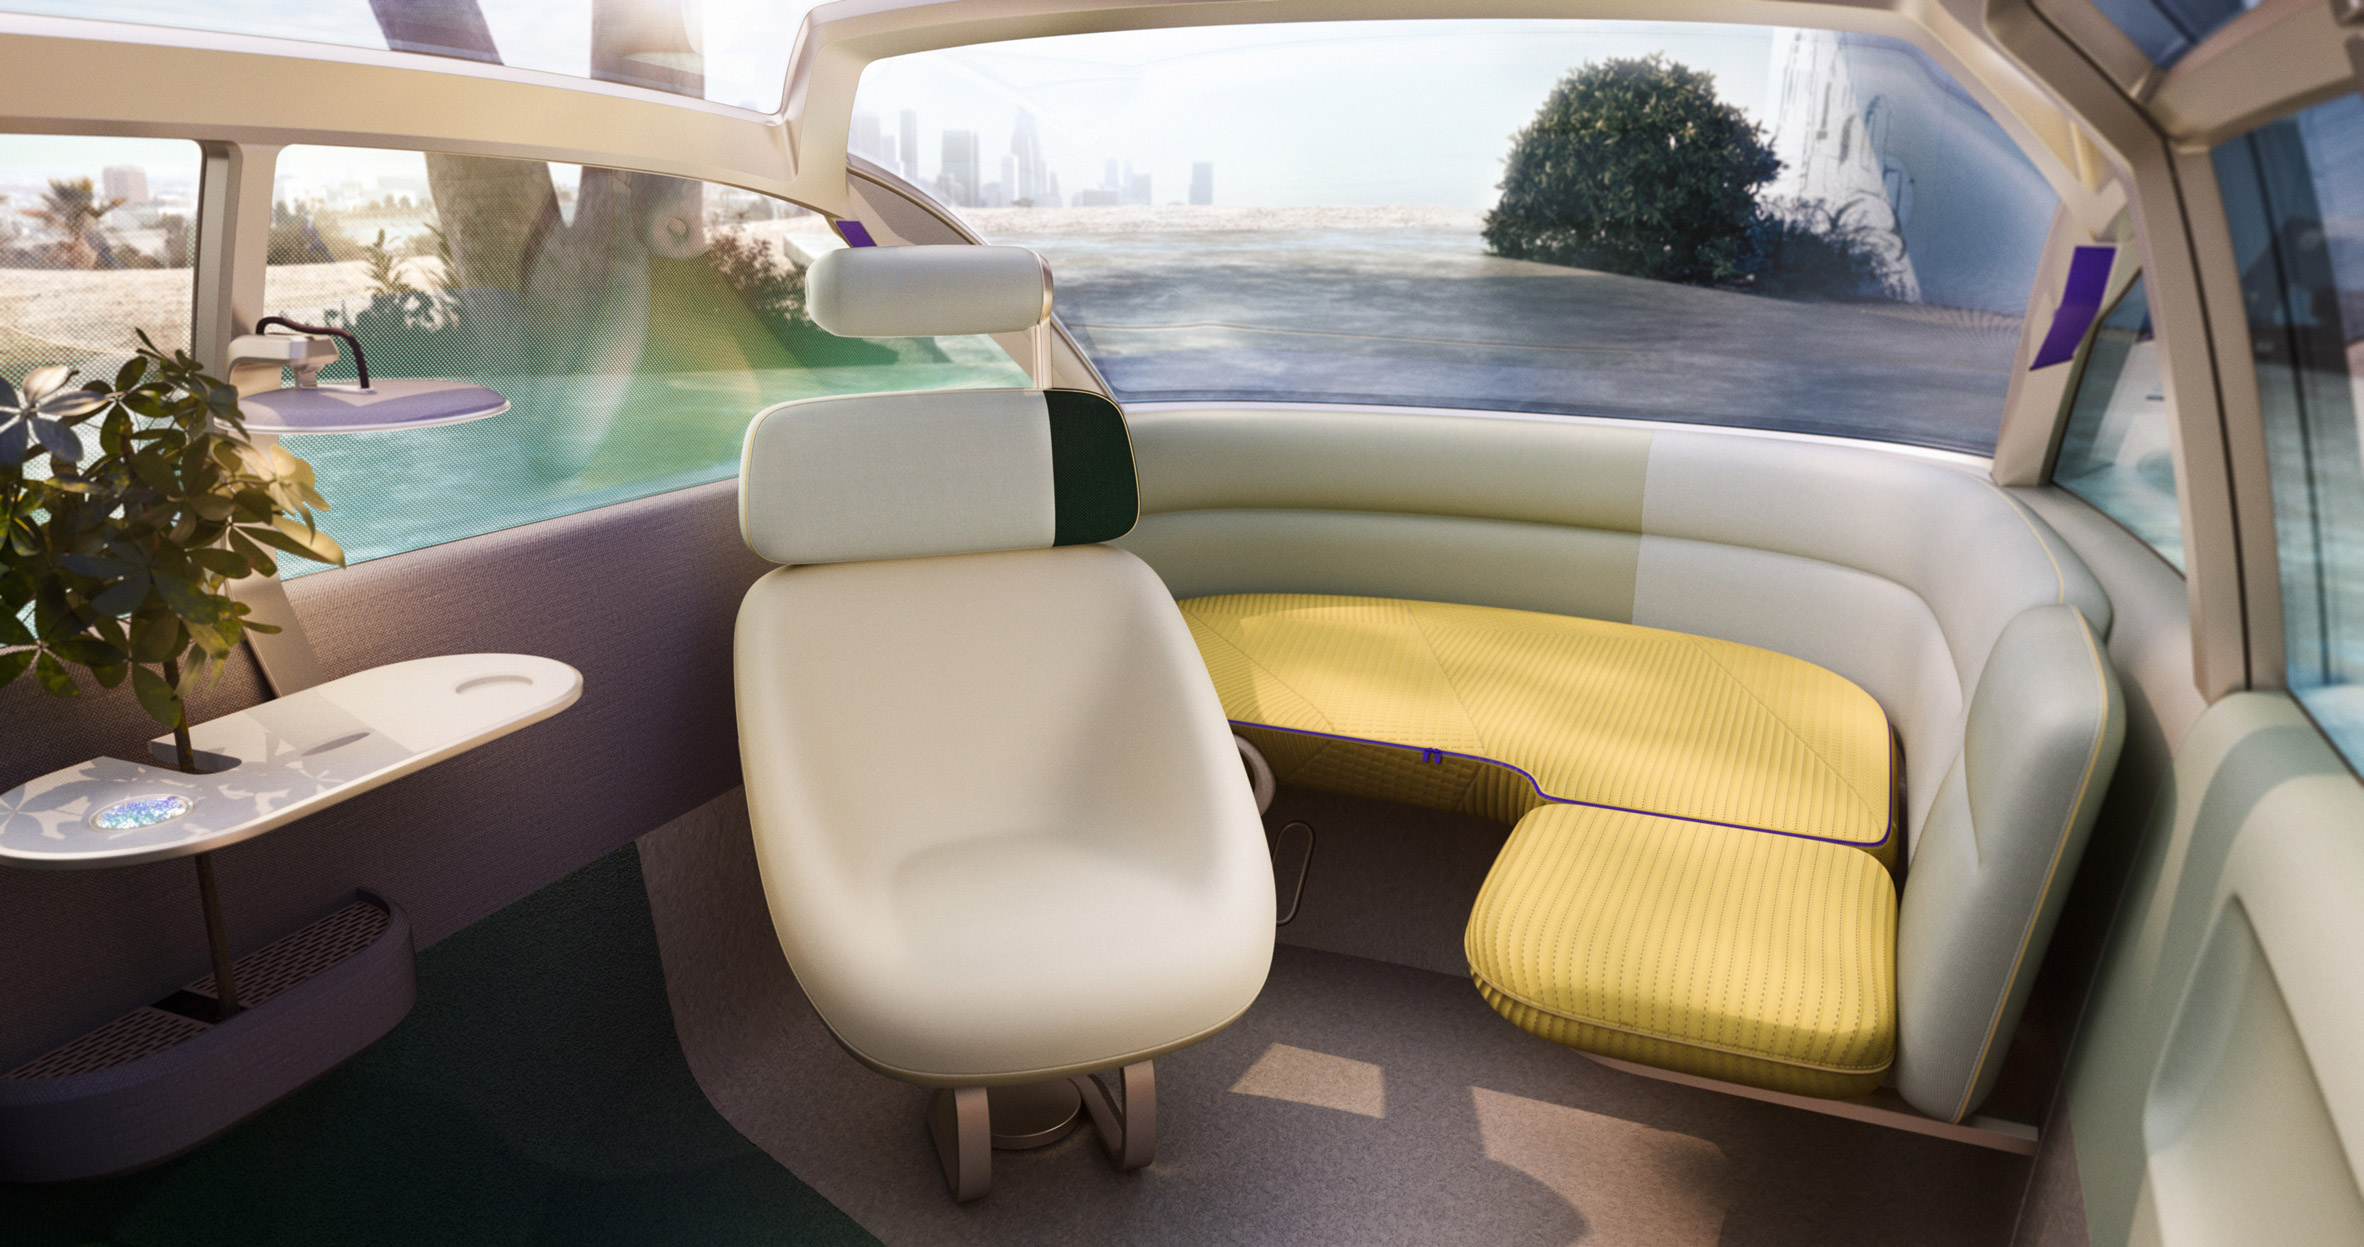 Interior of the MINI Vision Urbanaut concept vehicle